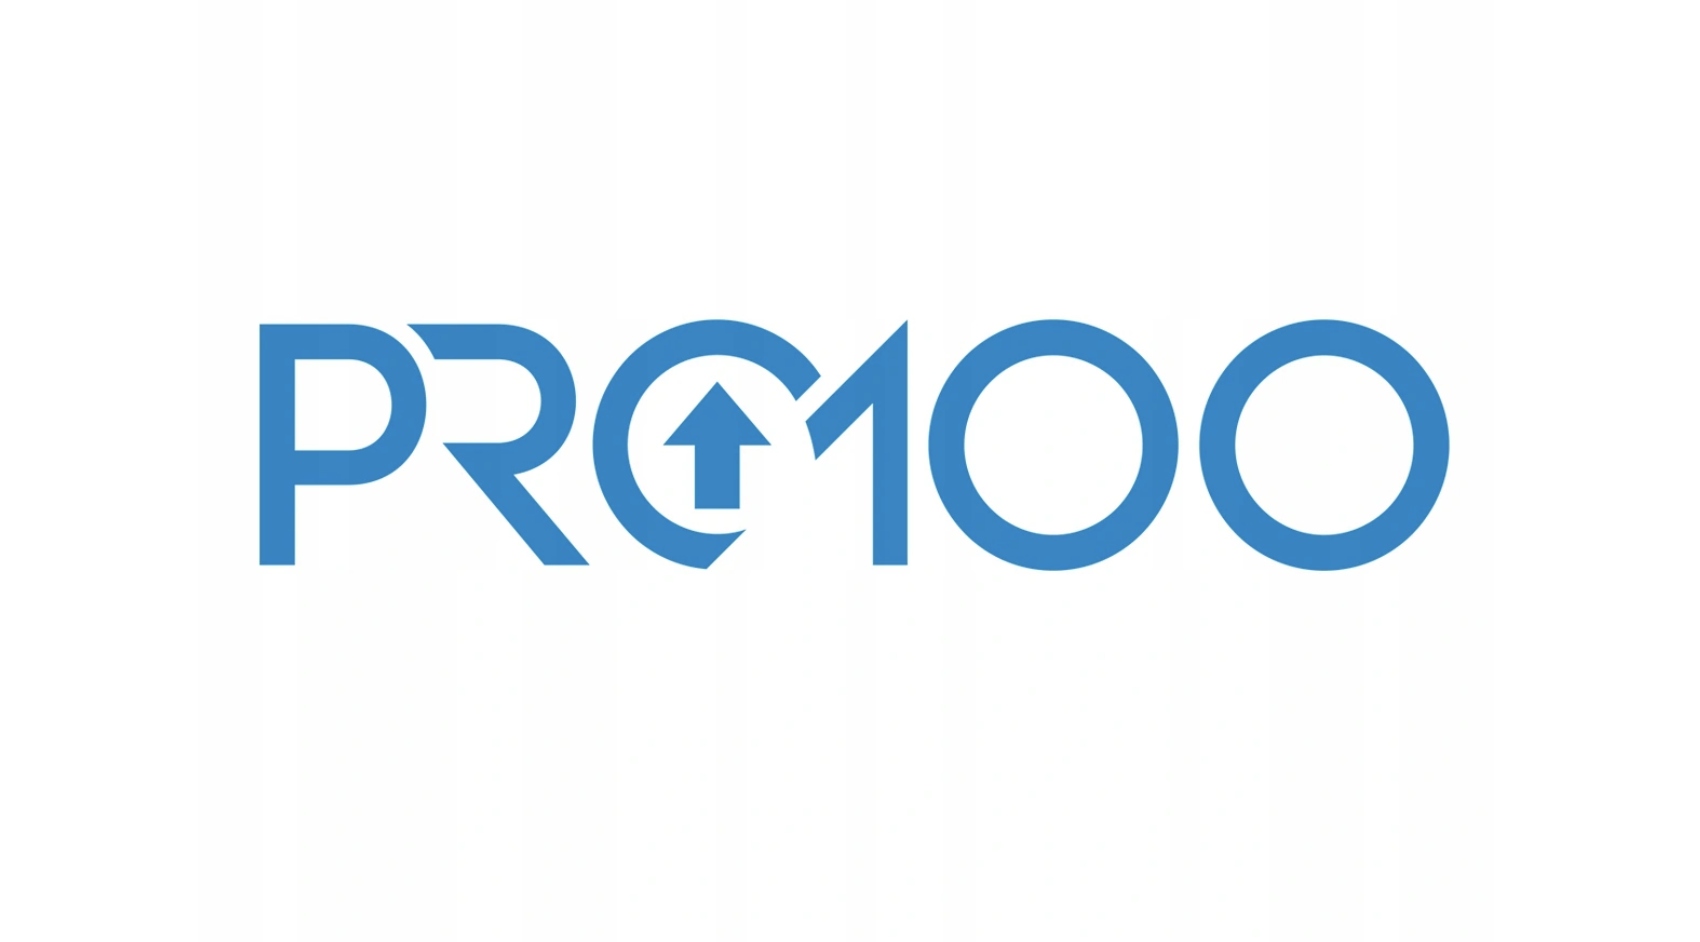 Pro. Логотип Pro. 100 Логотип. Pro100. Pro100 значок.